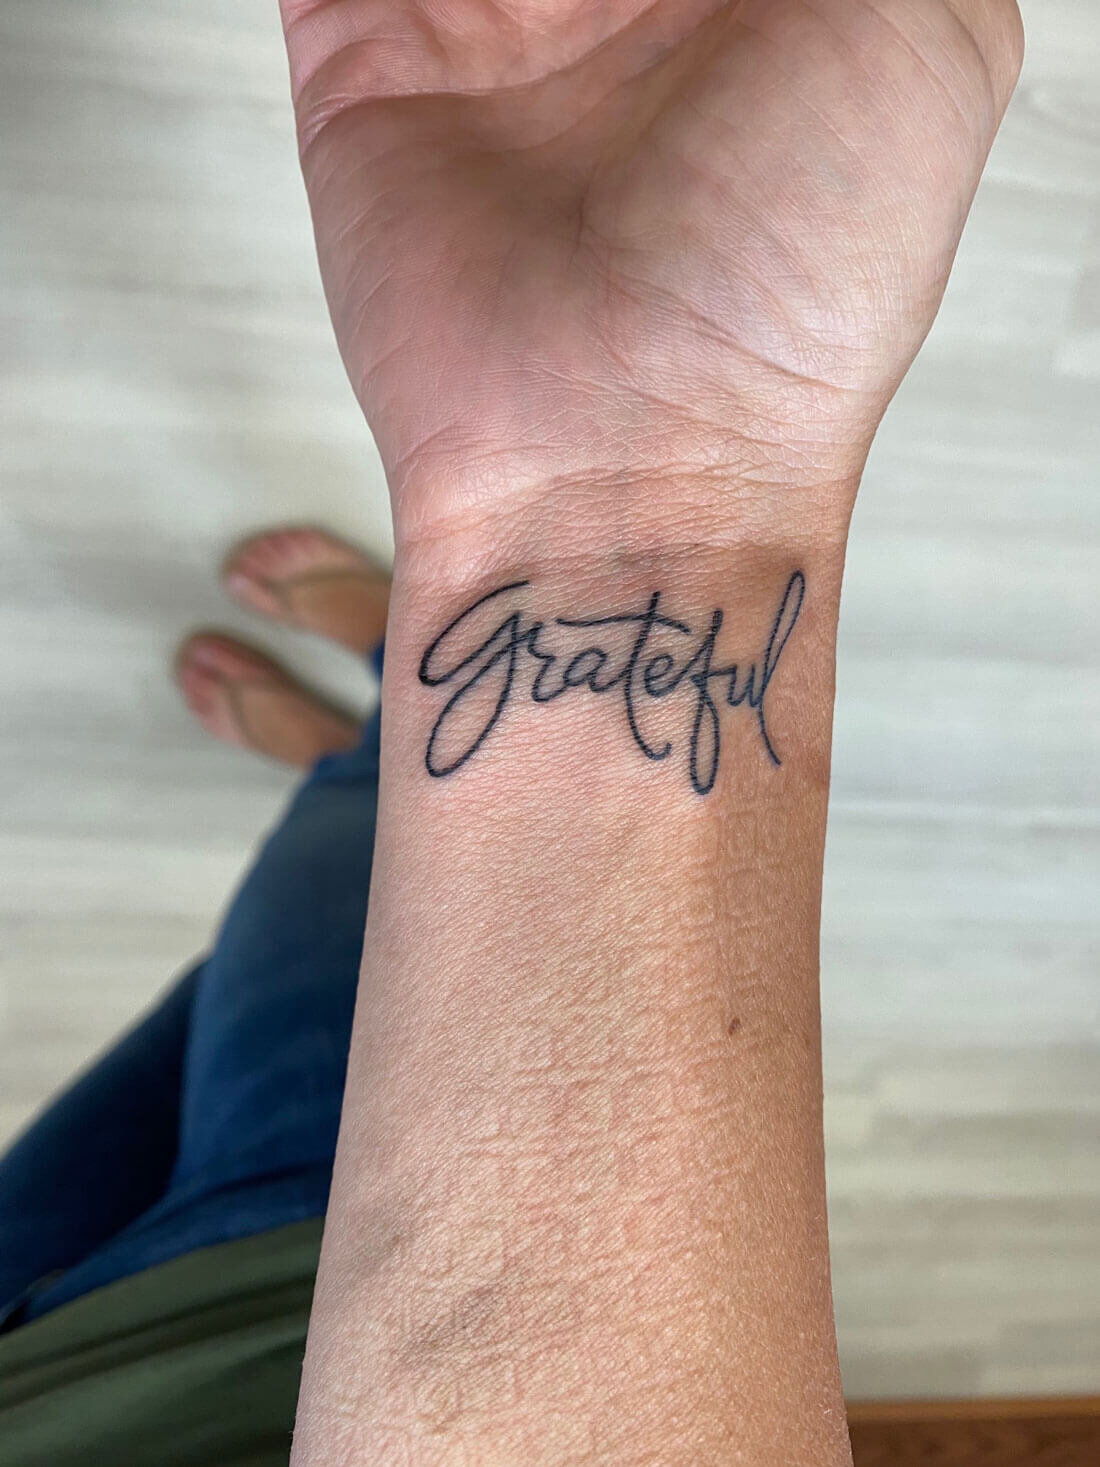 Grateful tattoo | Tattoo quotes, Wrist tattoos words, Gratitude tattoo